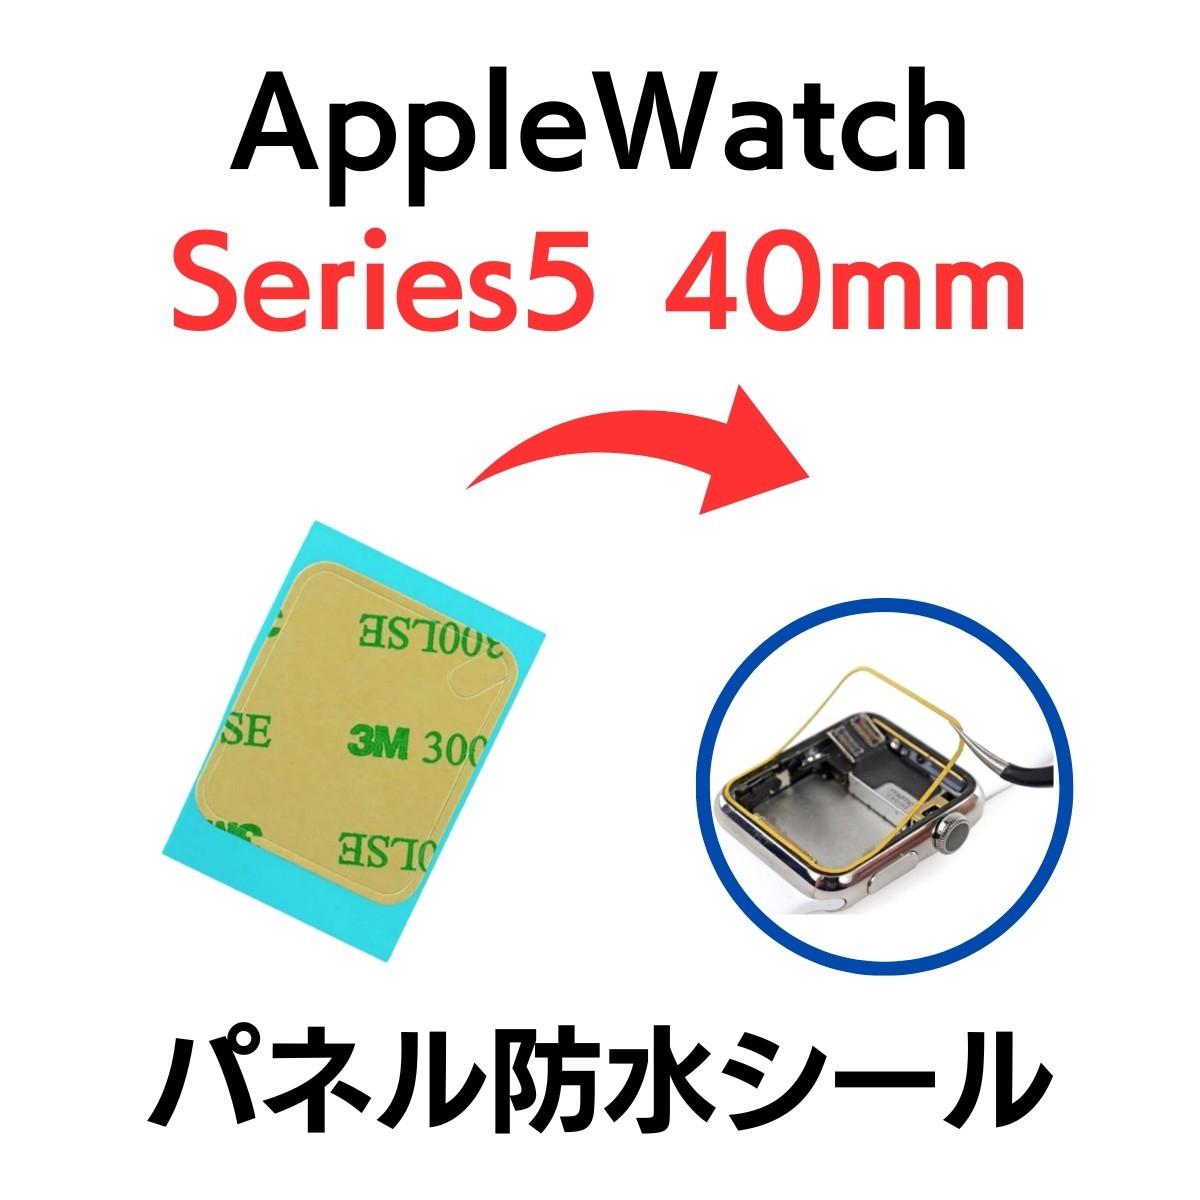 Apple Watch アップルウォッチ シリーズ5 40mm series シール テープ ベゼル 画面 パネル 防水 部品 パーツ 交換 ディスプレイ 修理_画像1